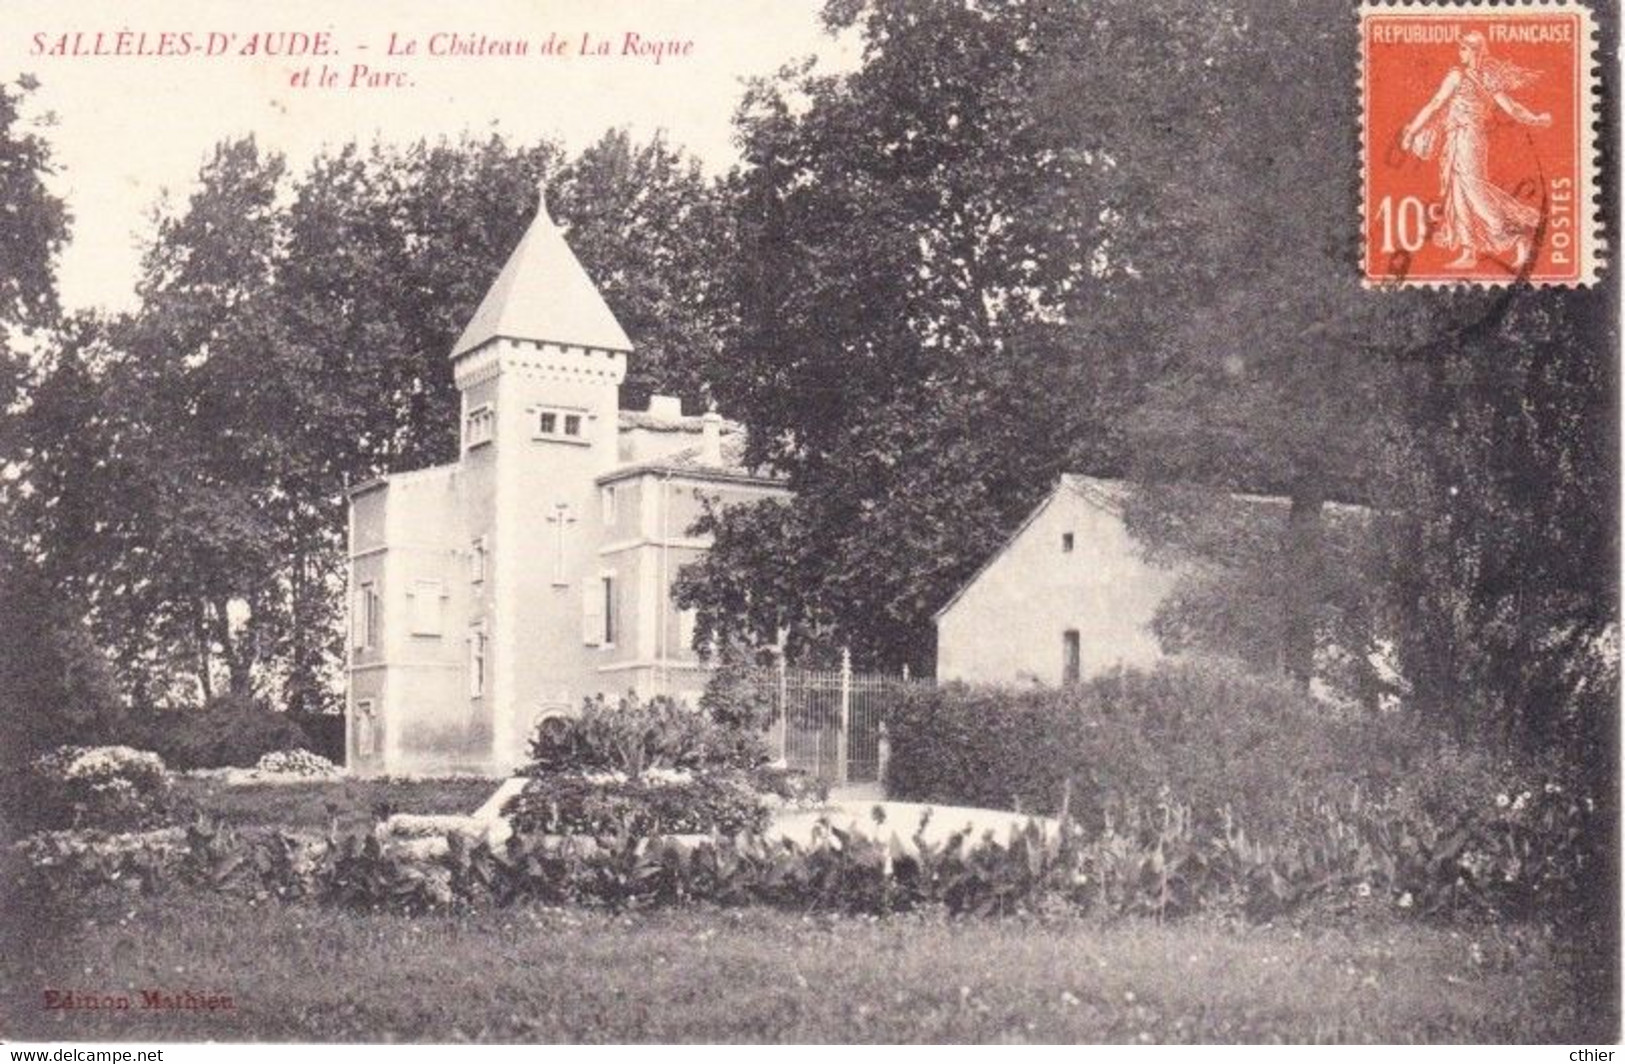 CPA SALLELES D'AUDE 11 - Le Château De La Roque Et Le Parc - Rare Cliché - Salleles D'Aude